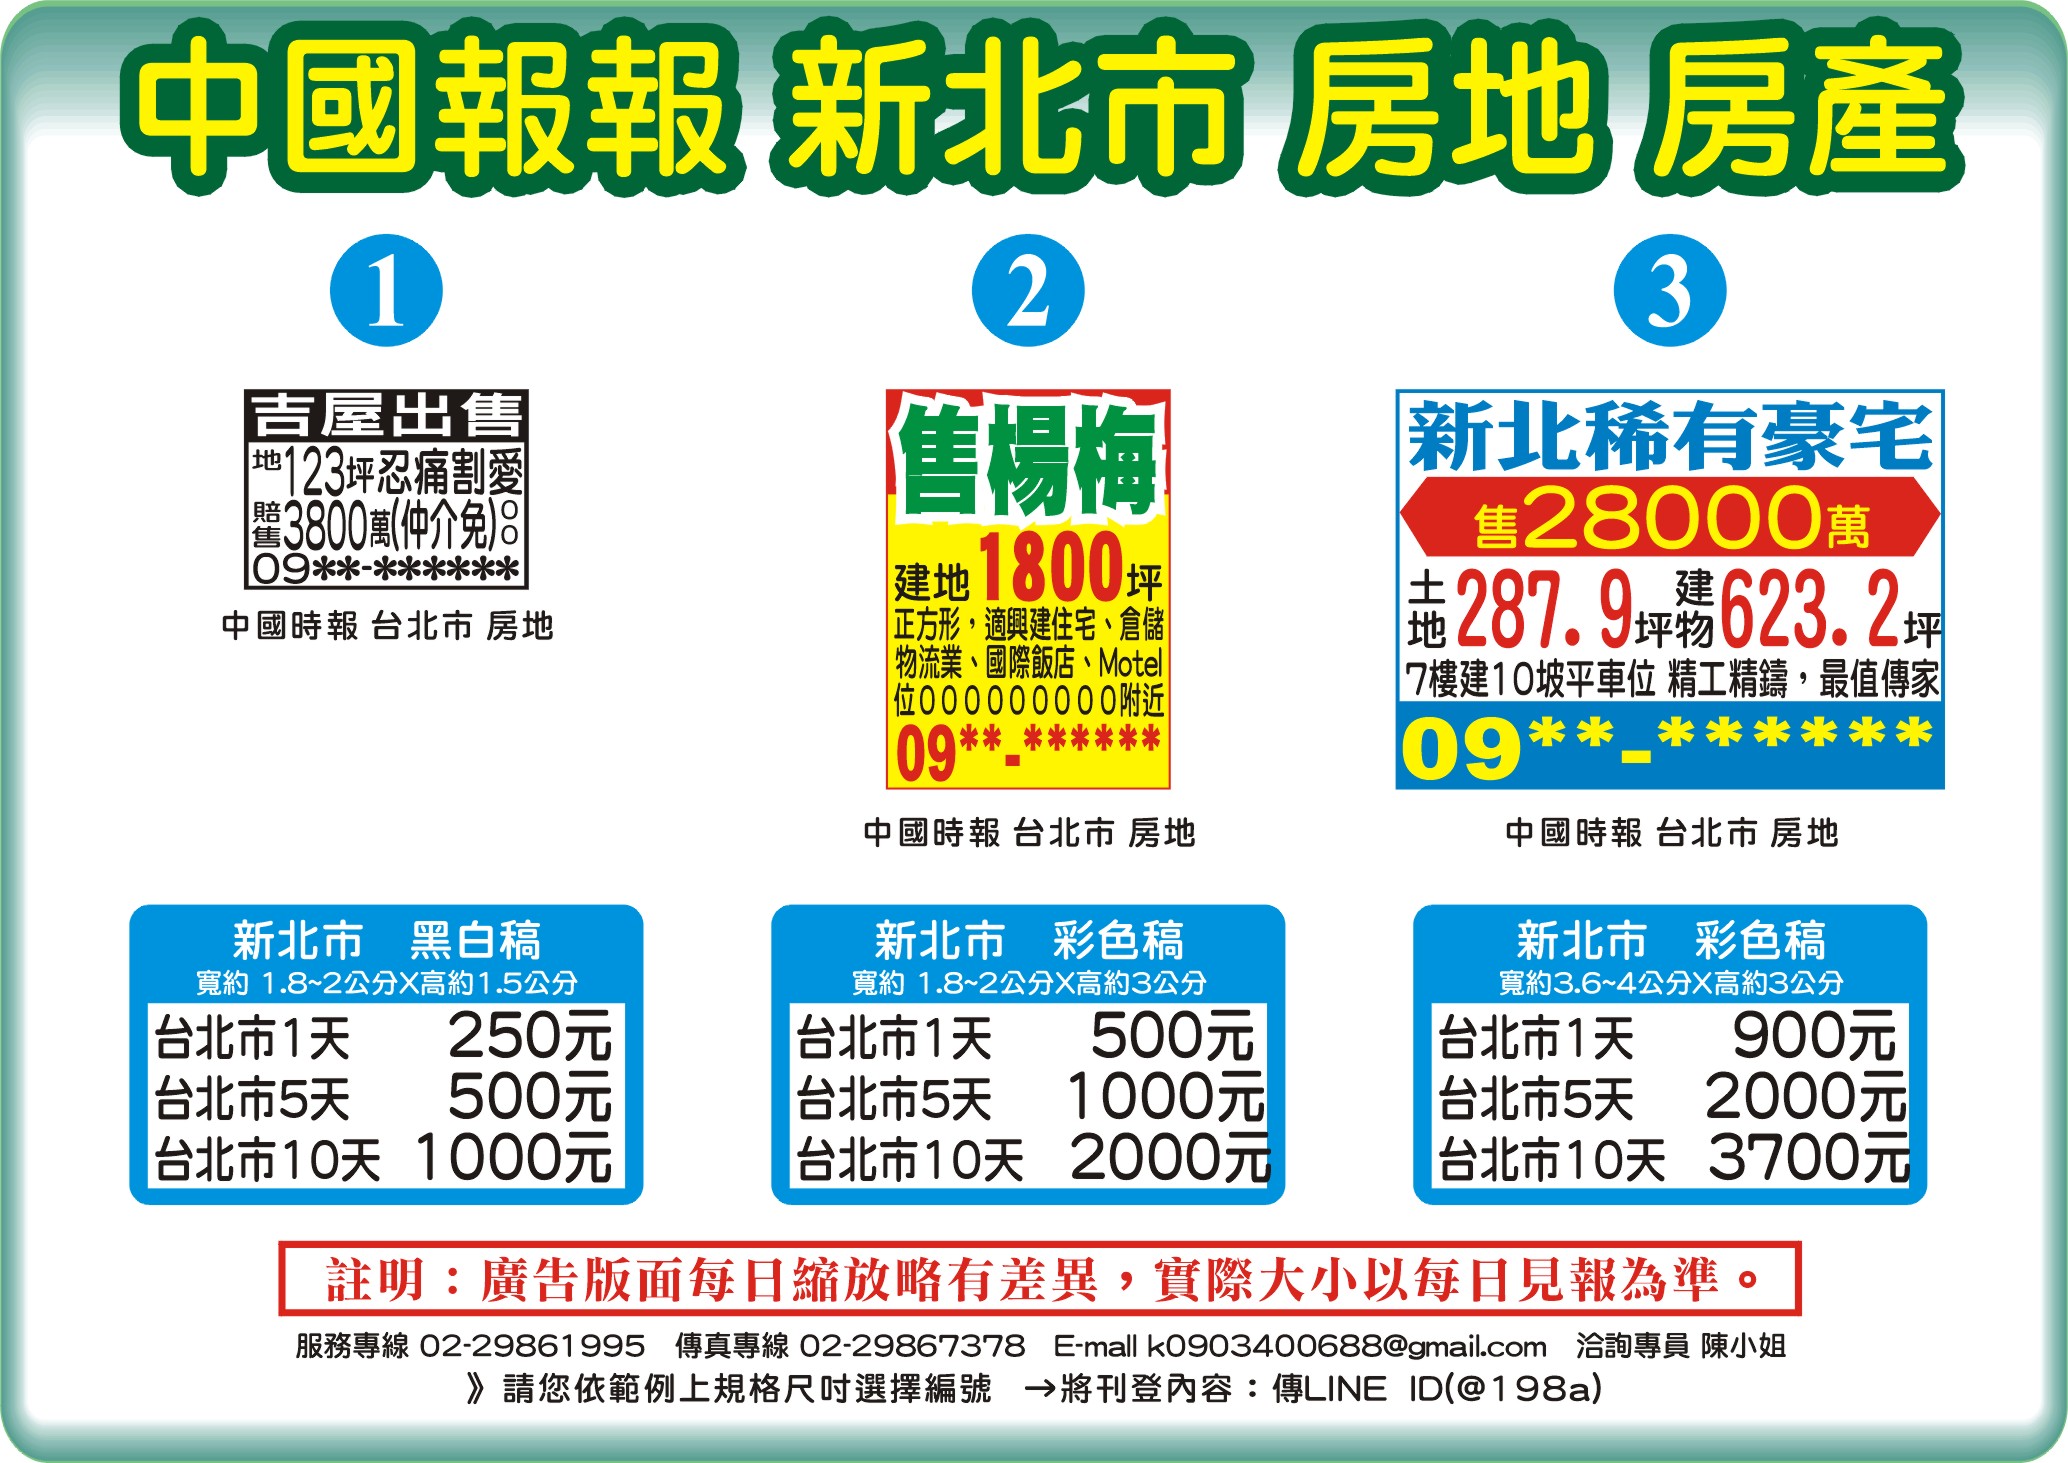 中國時報-房地房產-新北市-說明報價範例圖片